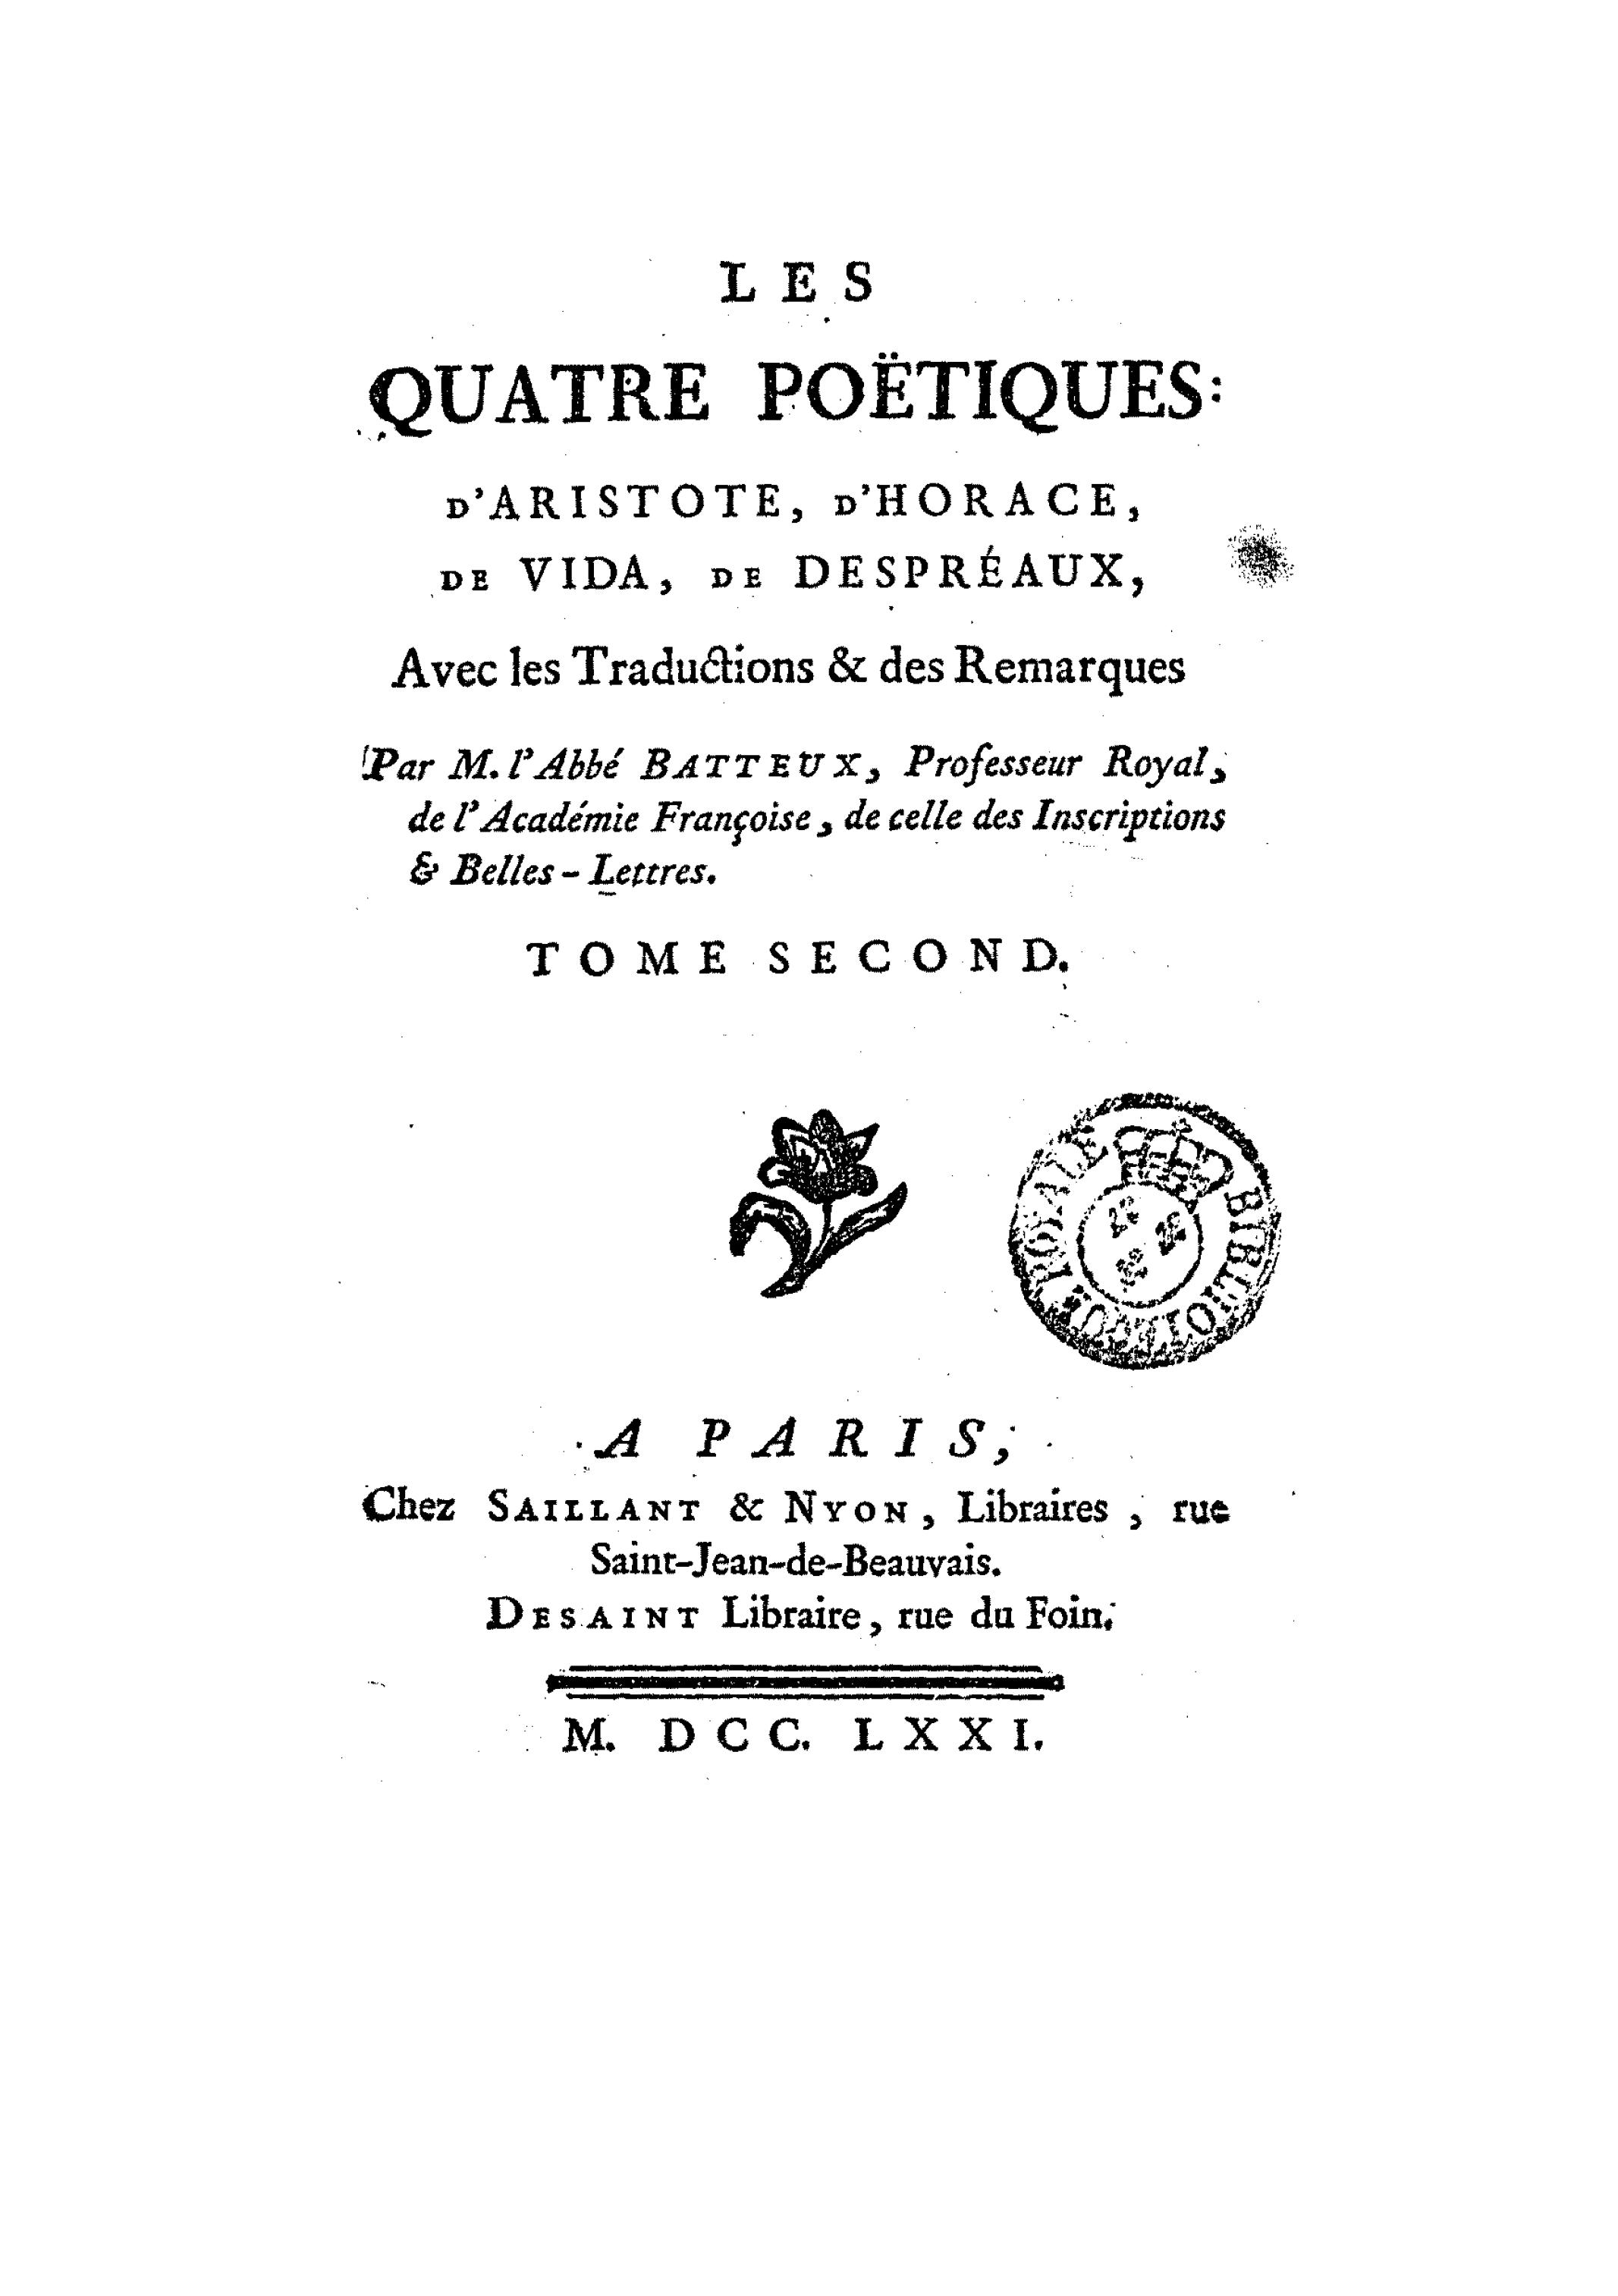 Les quatre Poëtiques: d'Aristote, d'Horace, de Vida, de Despréaux, avec les traductions et des remarques, Tome second